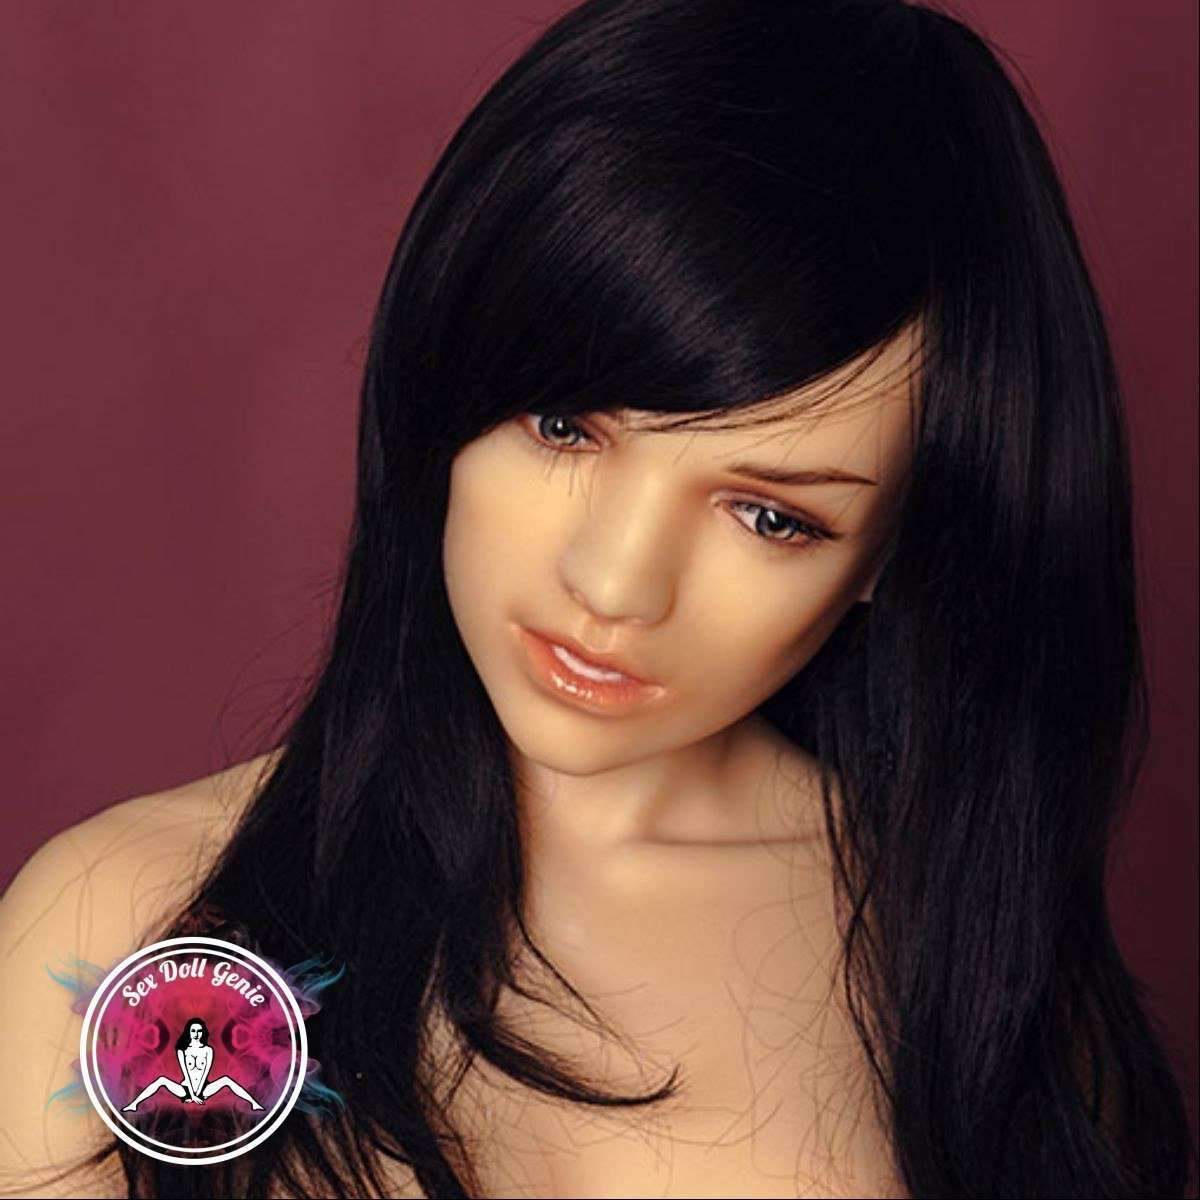 DS Doll - 163 - Mandy Head - Muñeca de silicona con copa D tipo 1-3